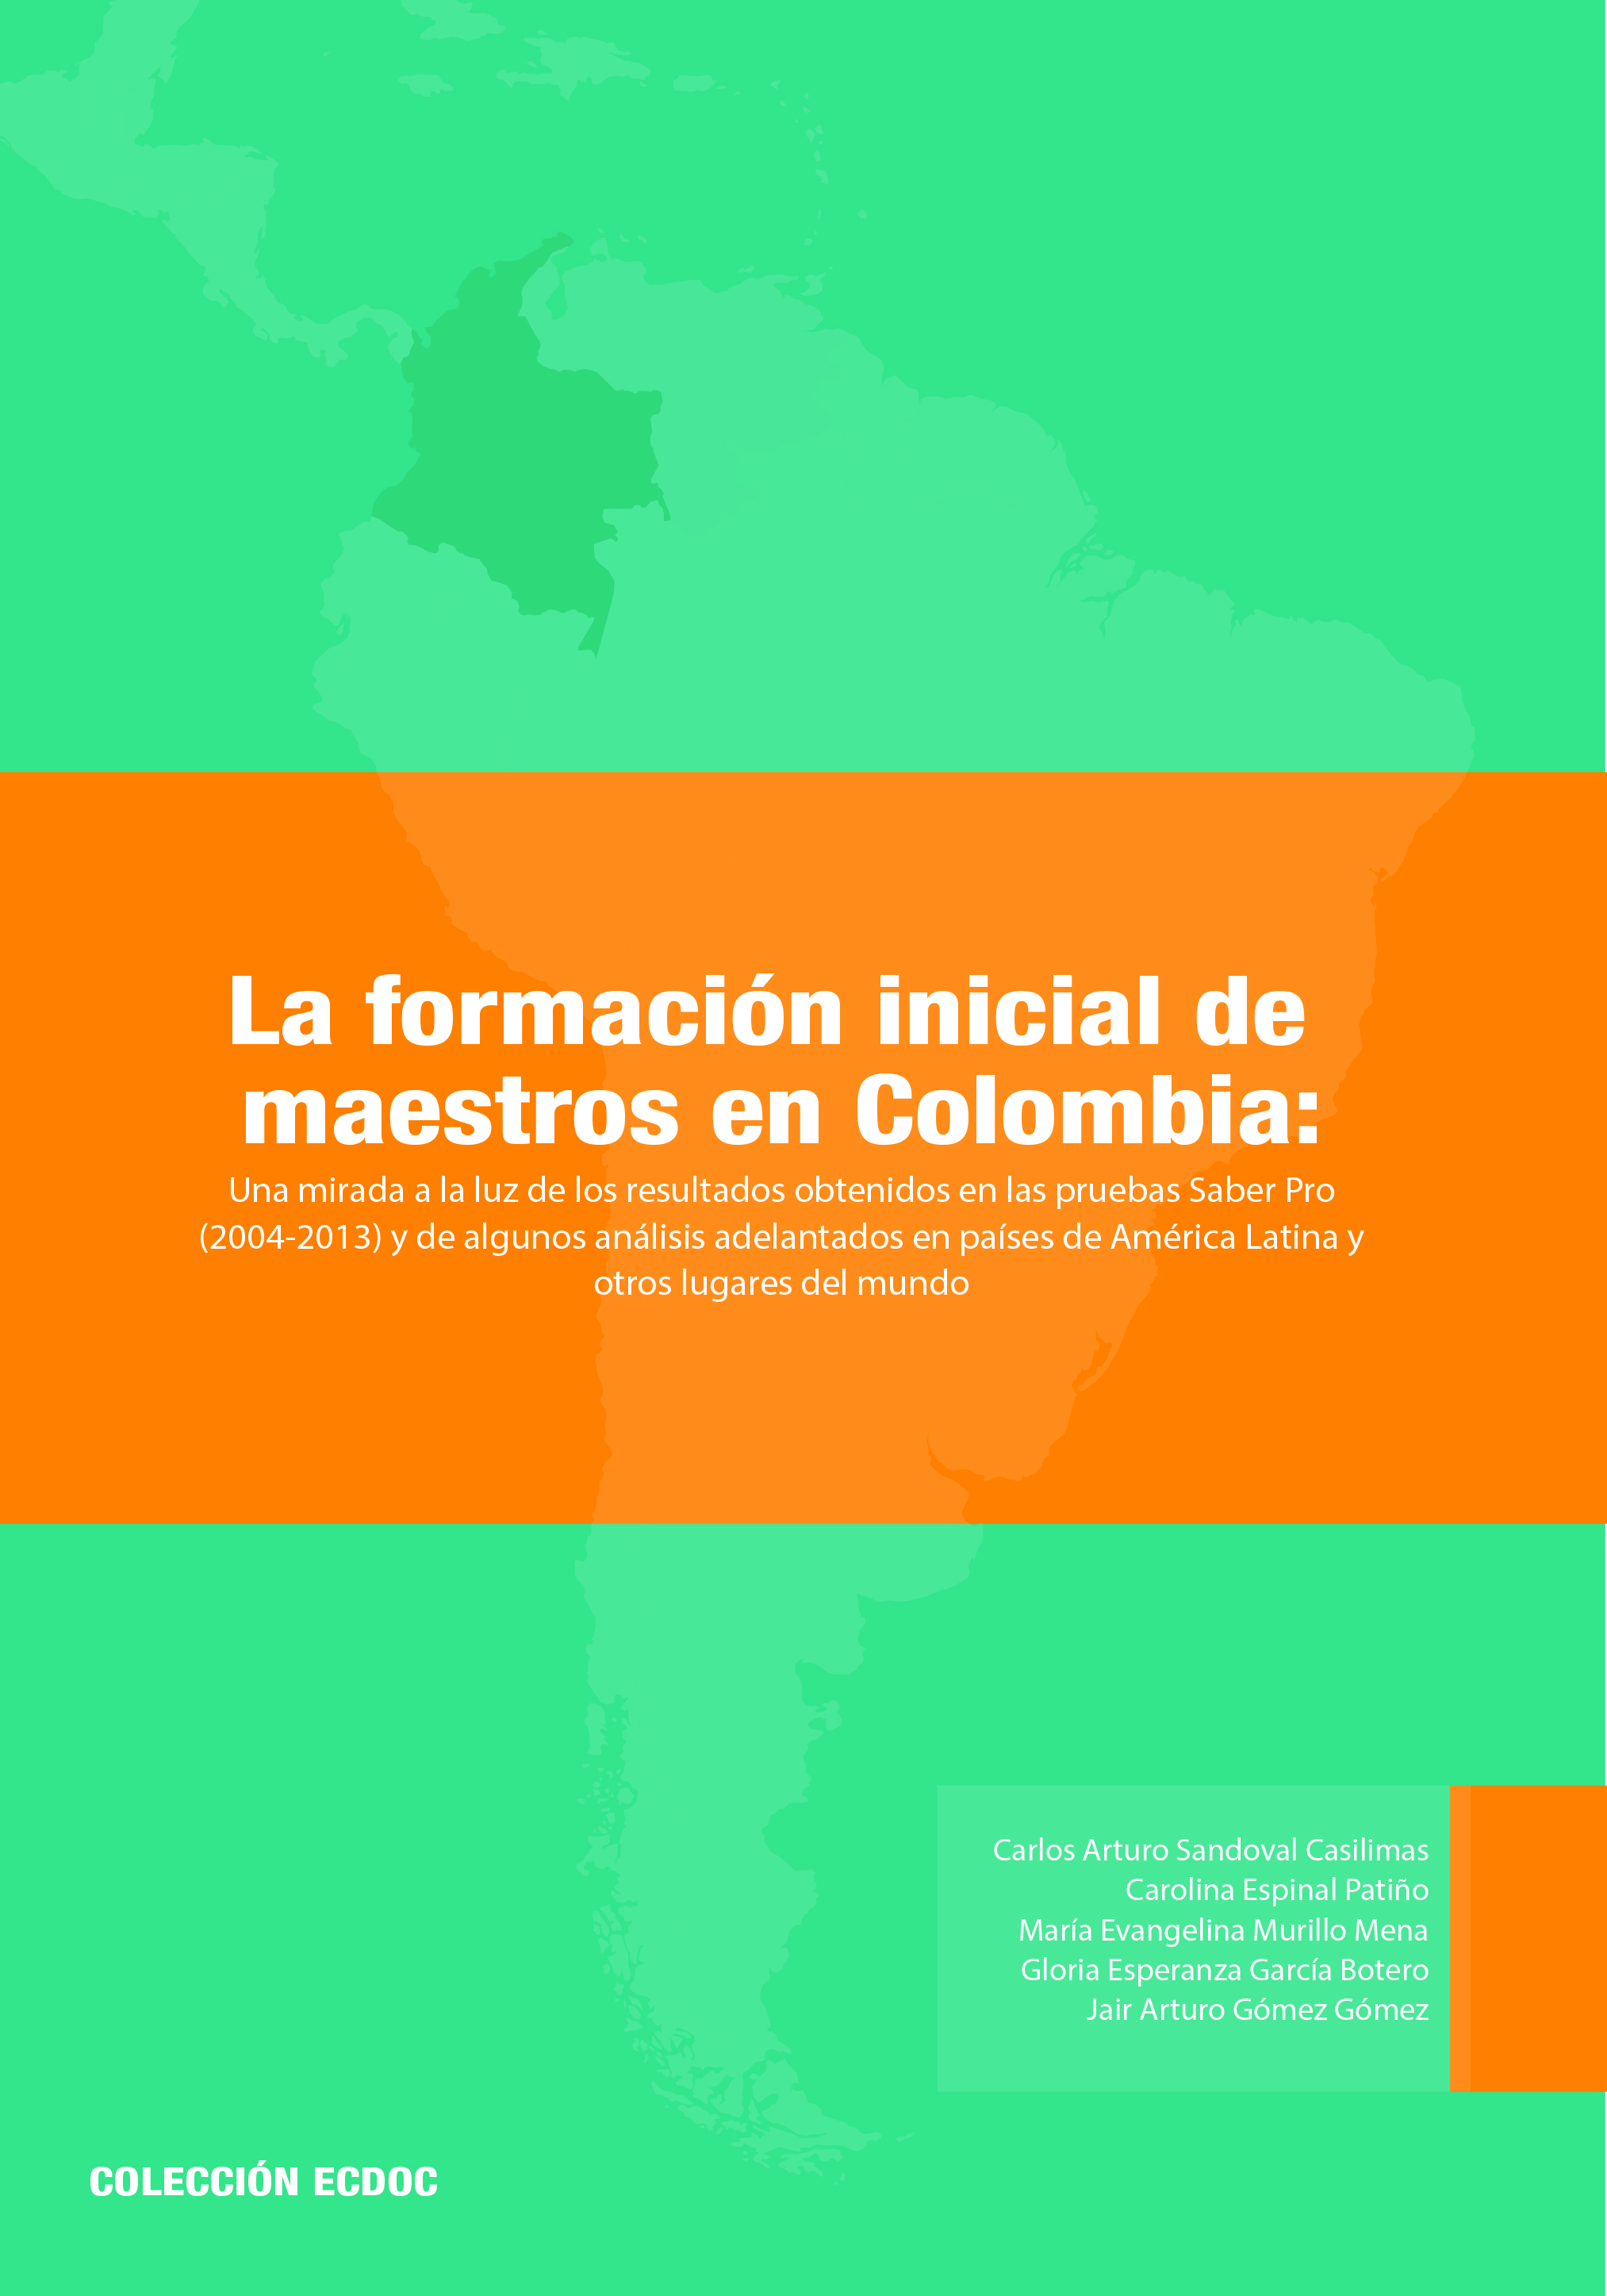 La formación inicial de maestros en colombia.jpg